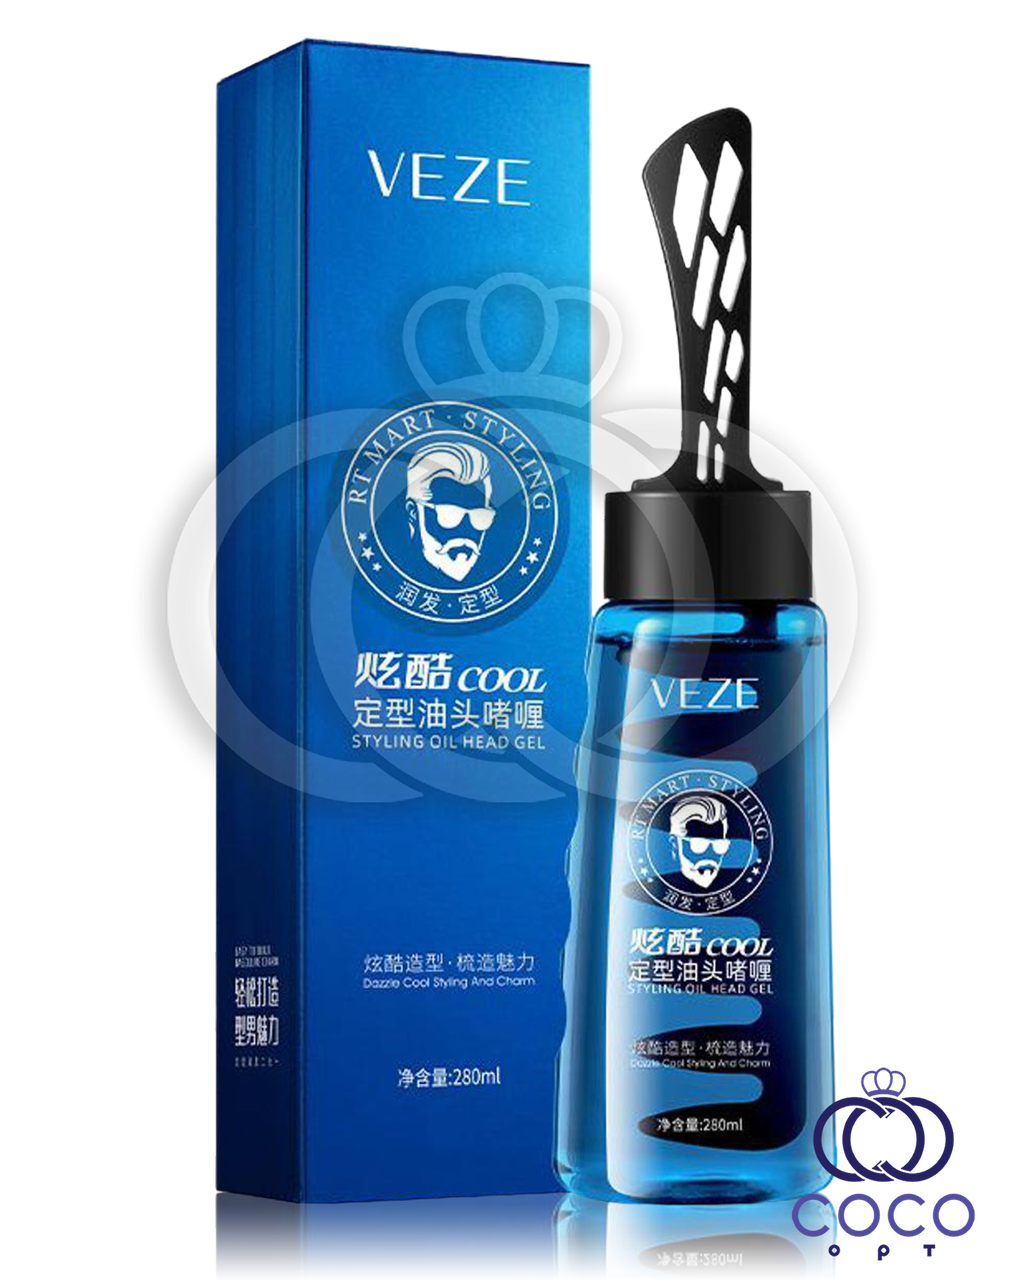 Гель-стайлінг для укладання волосся й бороди VEZE Cool Styling Oil Head Gel 280 ml